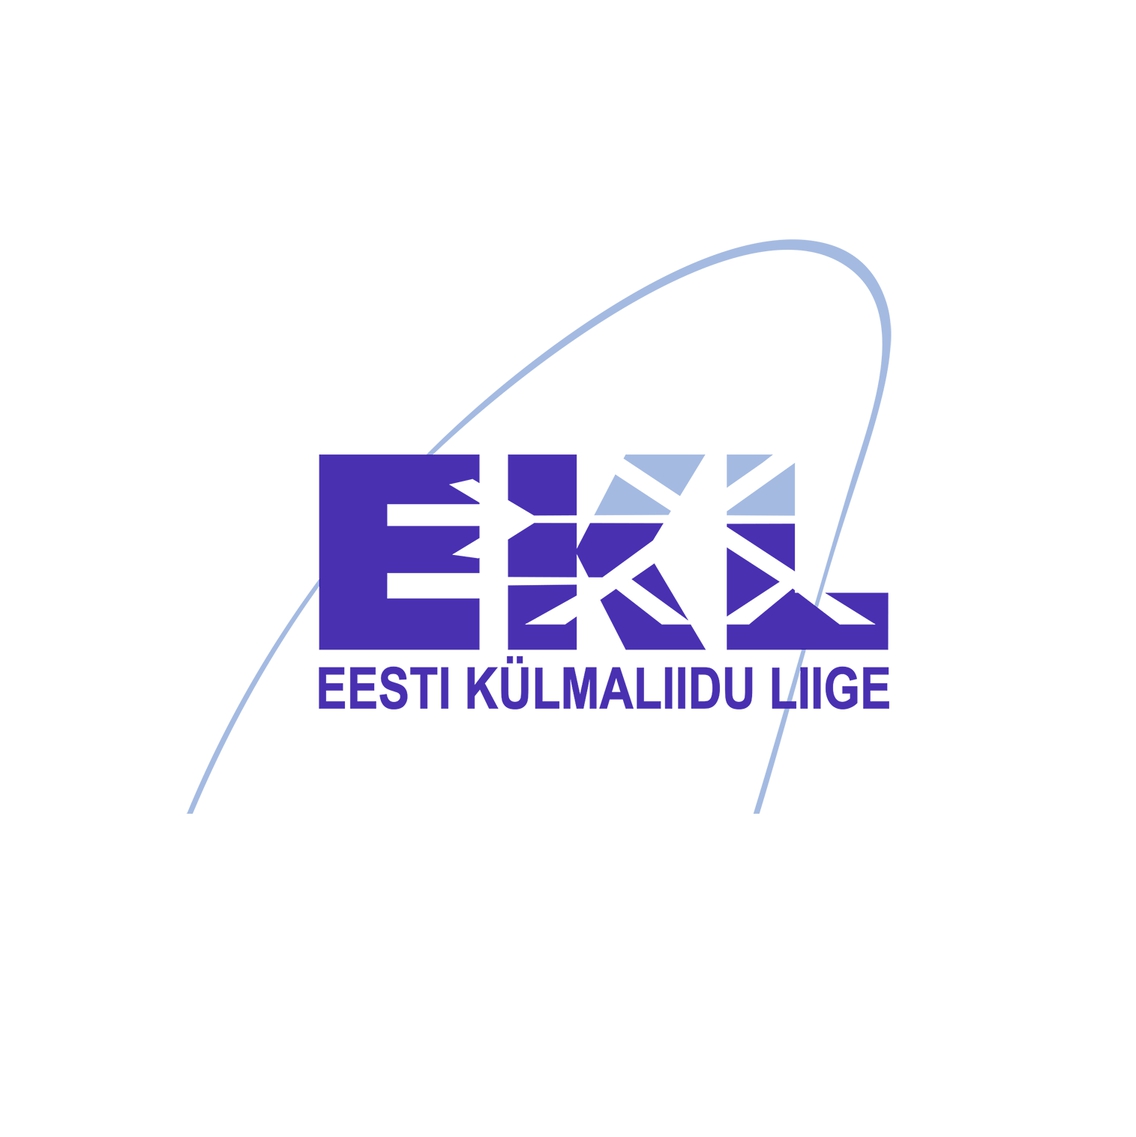 EESTI KÜLMALIIT MTÜ - Activities of other business and employers organisations in Tallinn